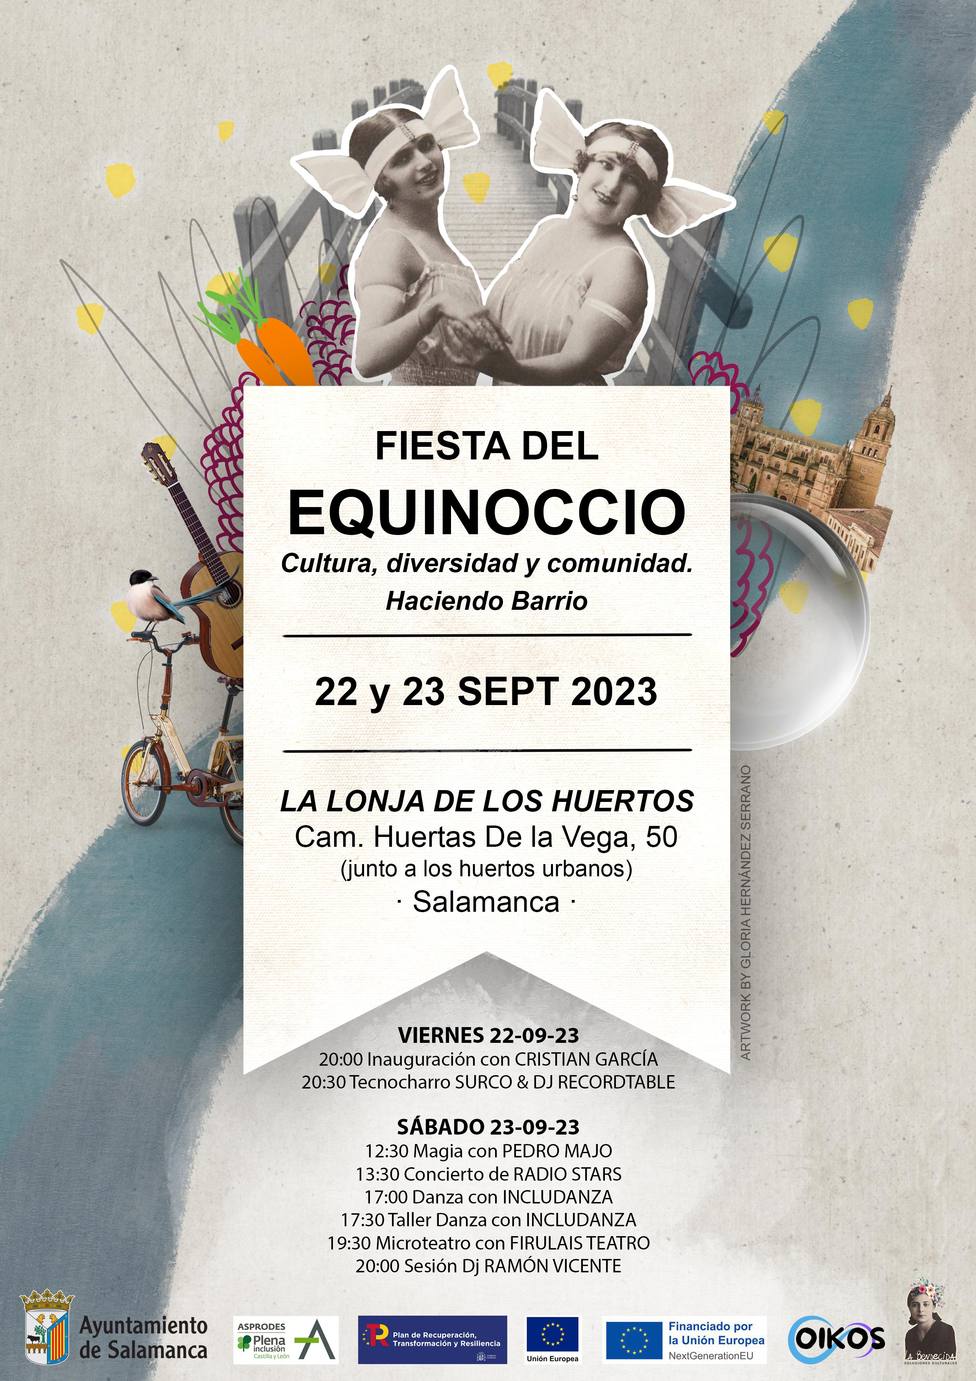 Fiesta del Equinoccio en la Lonja de los Huertos en Salamanca